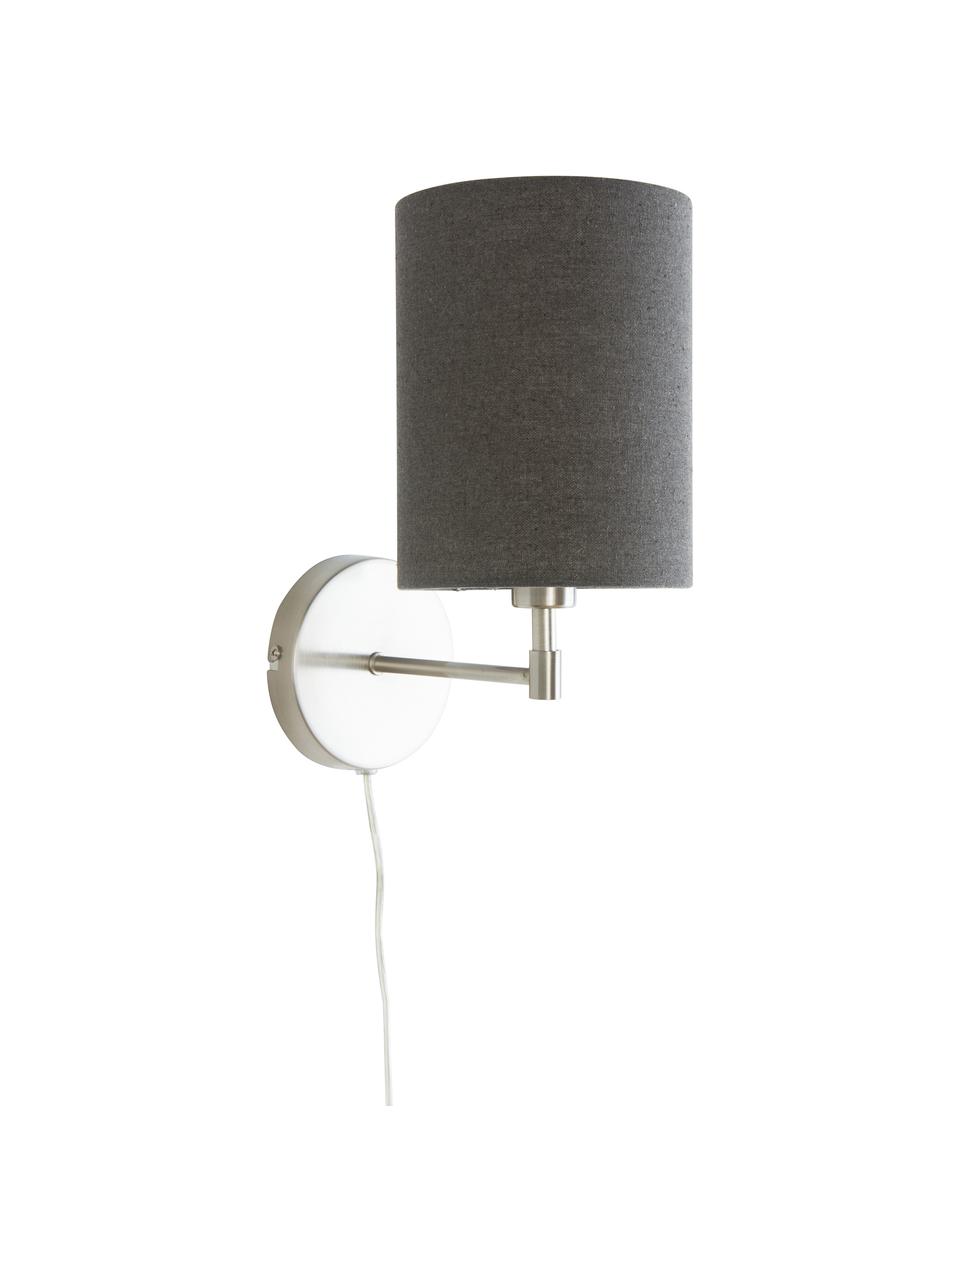 Klassieke wandlampen Seth met stekker, 2 stuks, Lampenkap: textiel, Grijs, nikkelkleurig, D 23 x H 32 cm